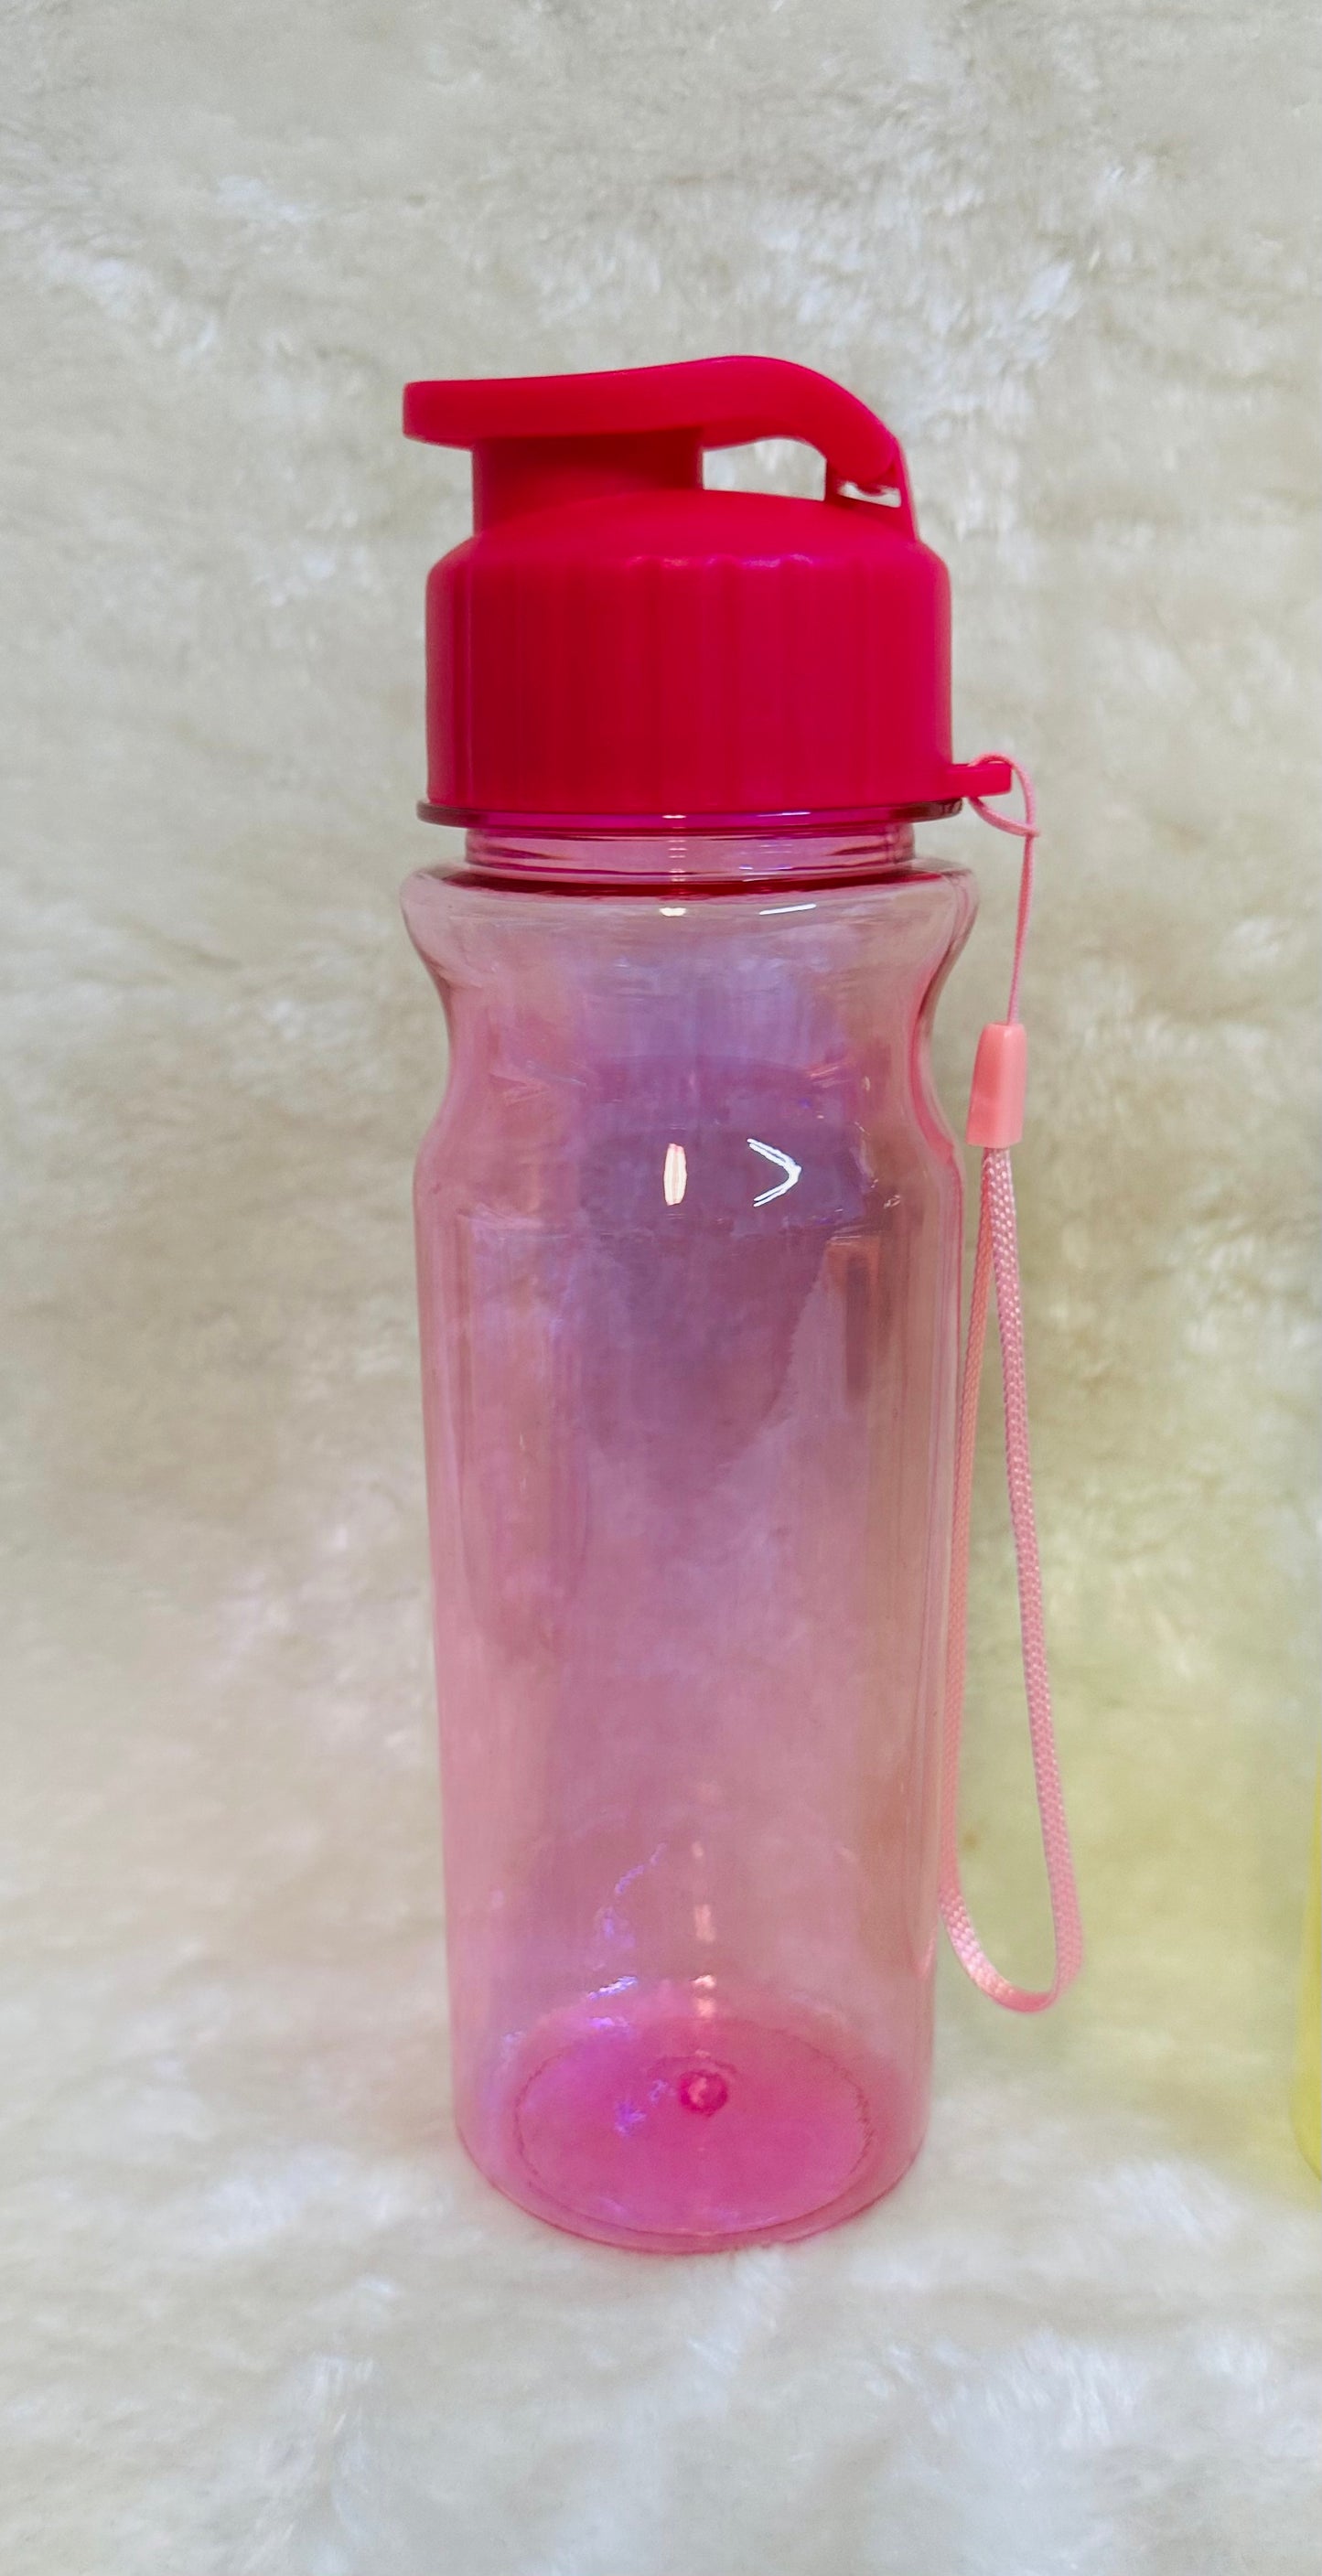 Water Jelly Bottle GET